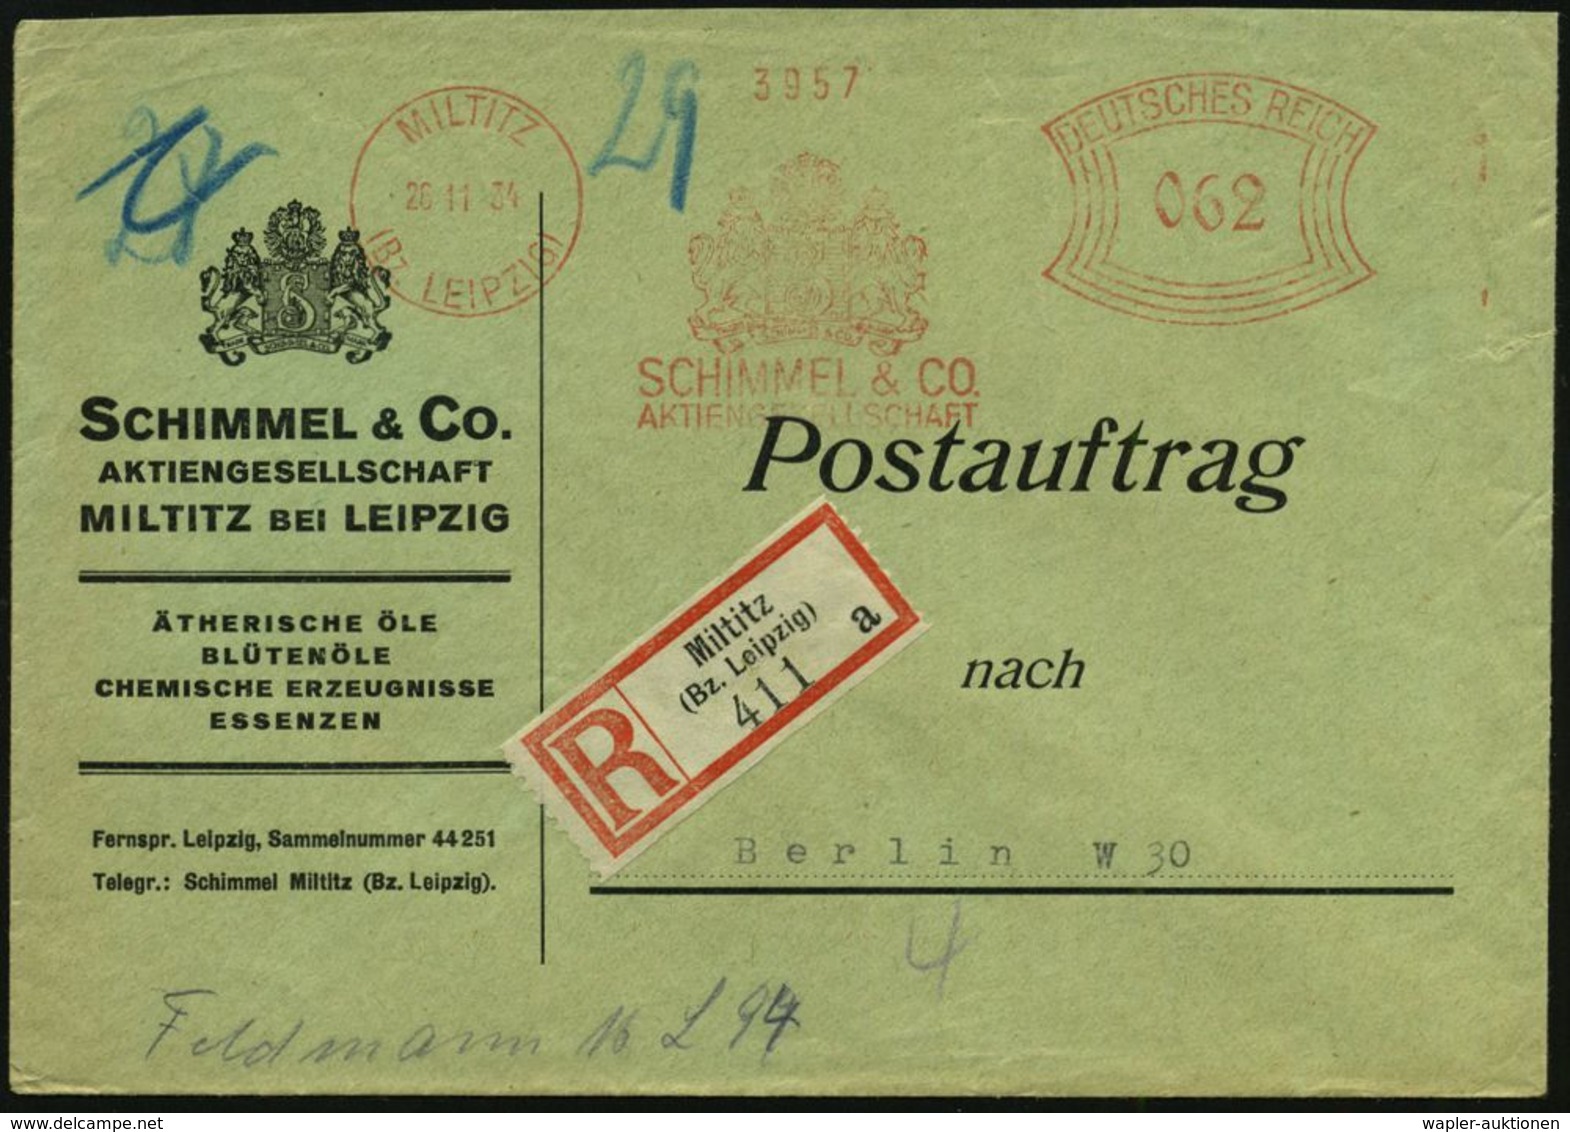 HOMÖOPATHIE / HEILPFLANZEN : MILTITZ/ (Bz.LEIPZIG)/ SCHIMMEL & CO/ AG 1934 (26.11.) AFS 062 Pf. (2 Wappenlöwen M.Monogr. - Medizin